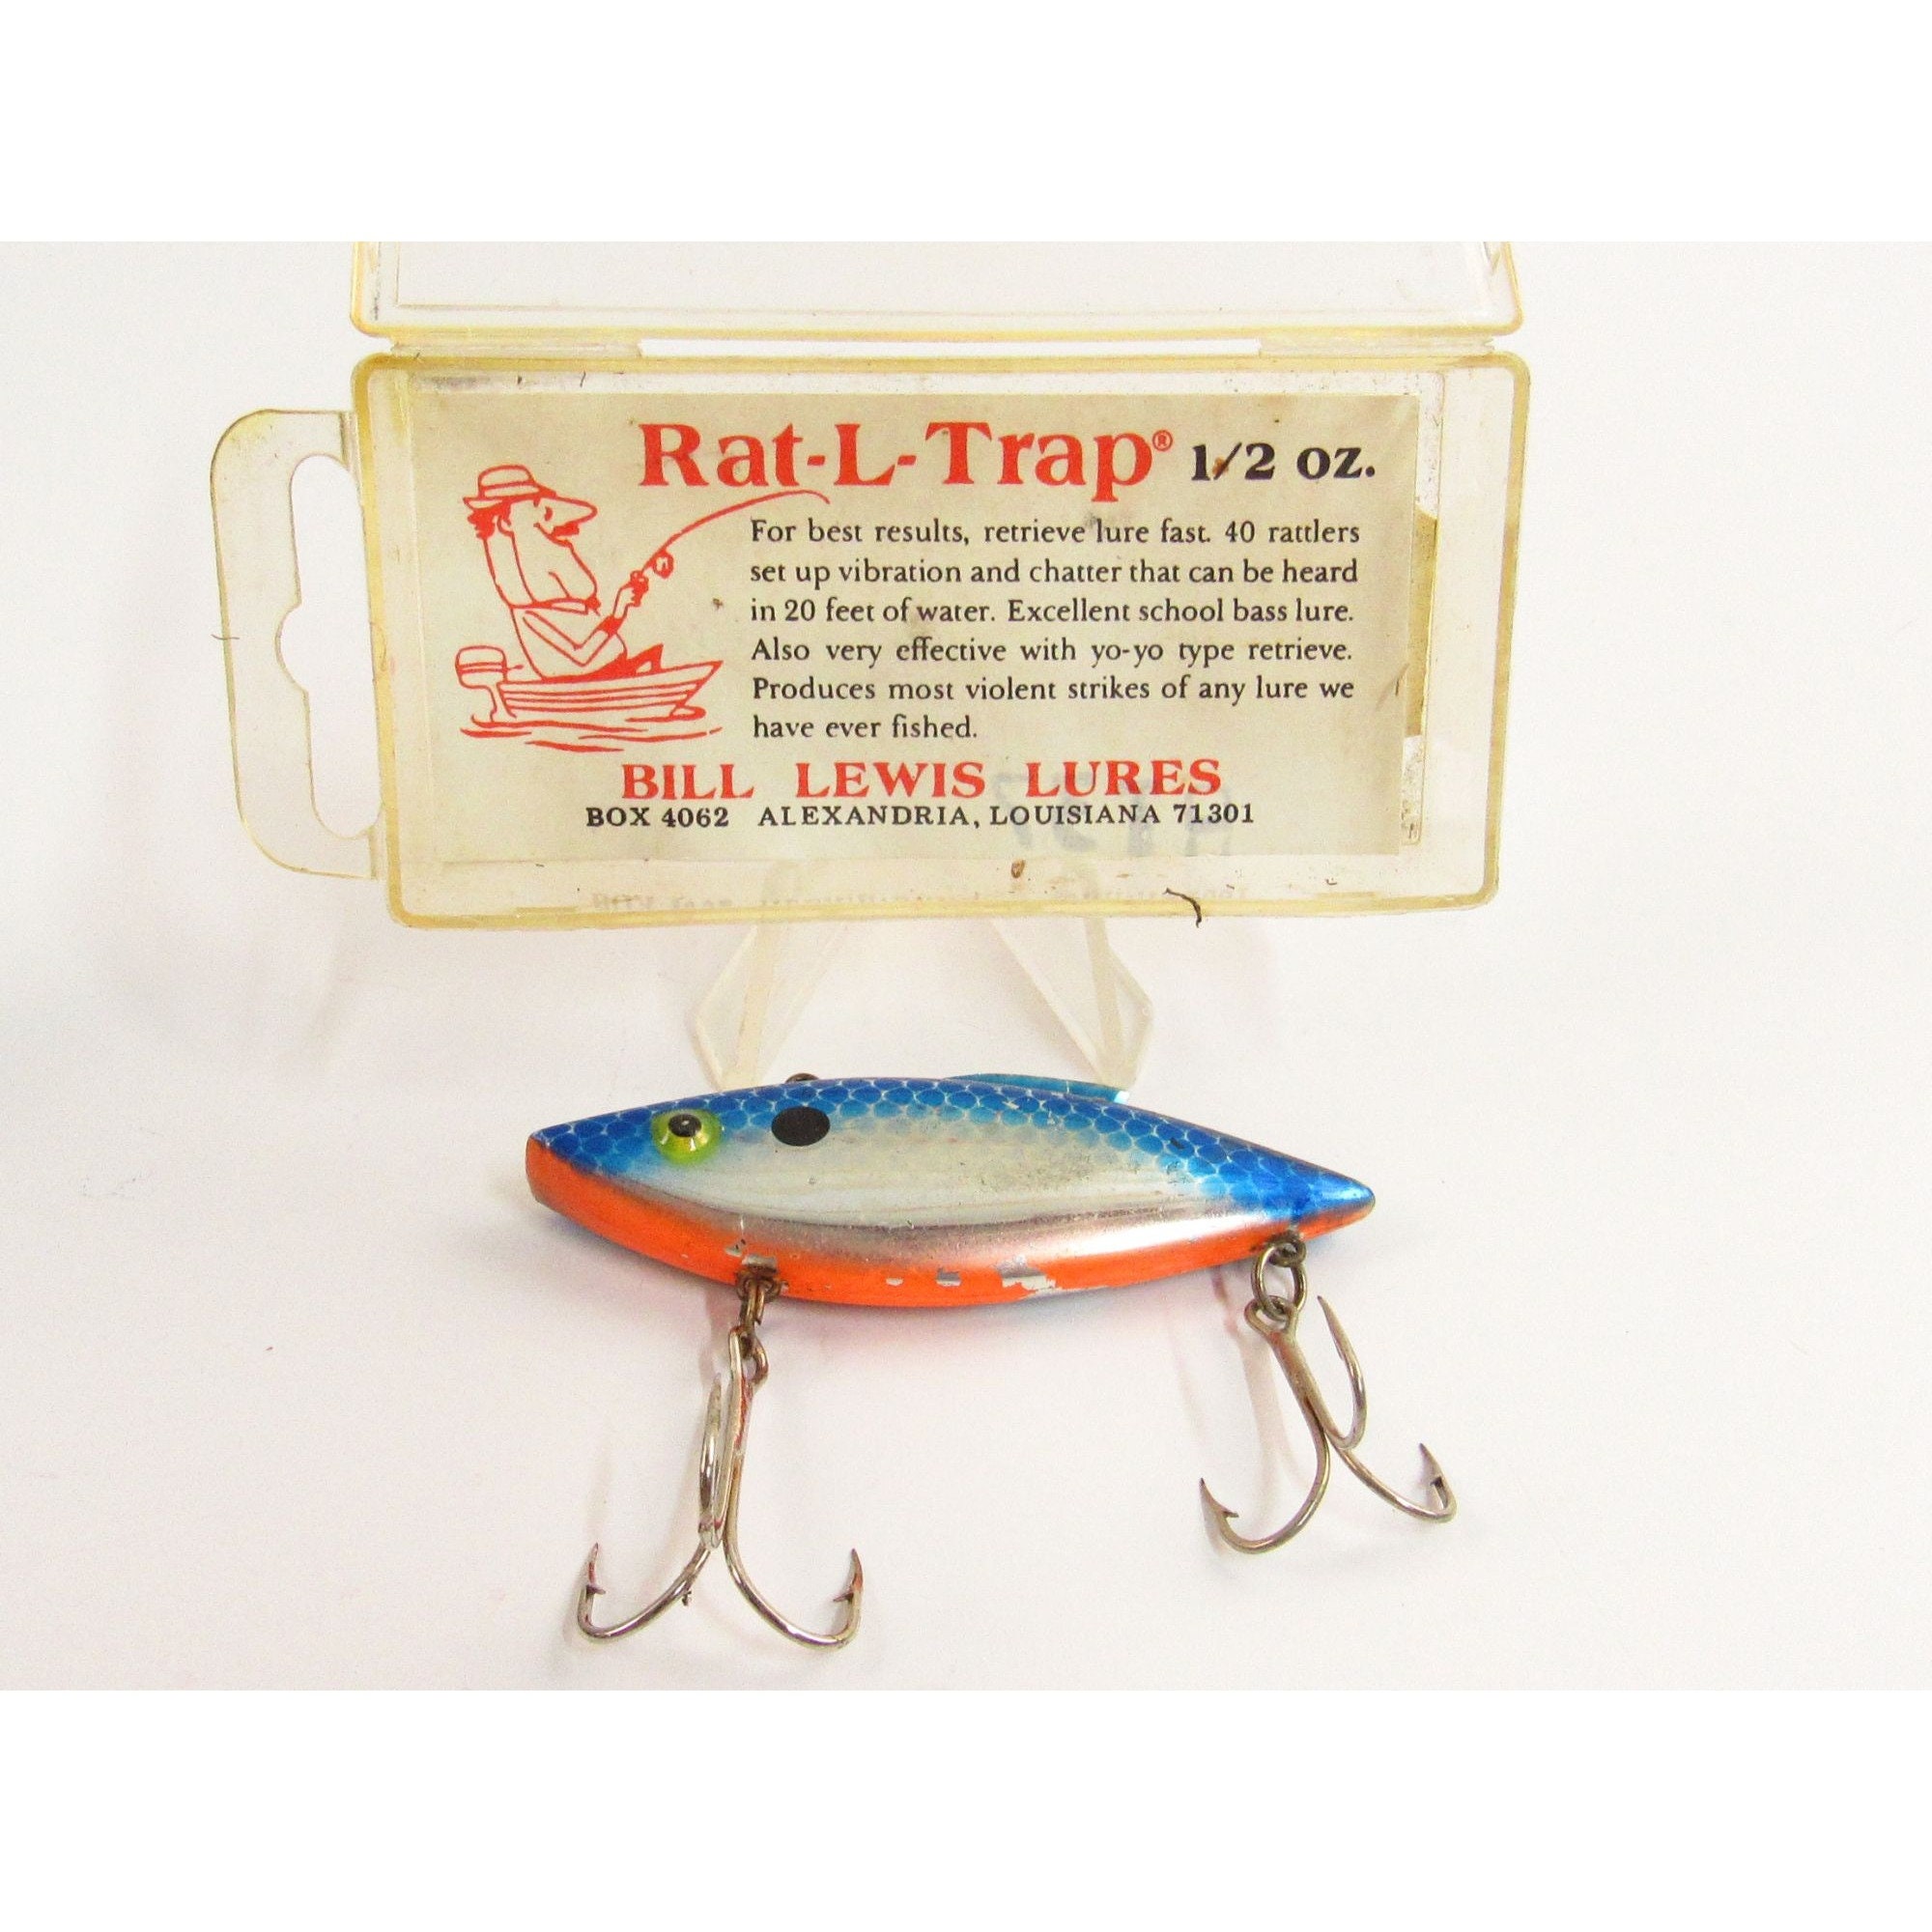 Vintage Rat L Trap Rattle Trap Fishing Lure Bill Lewis Lures L143